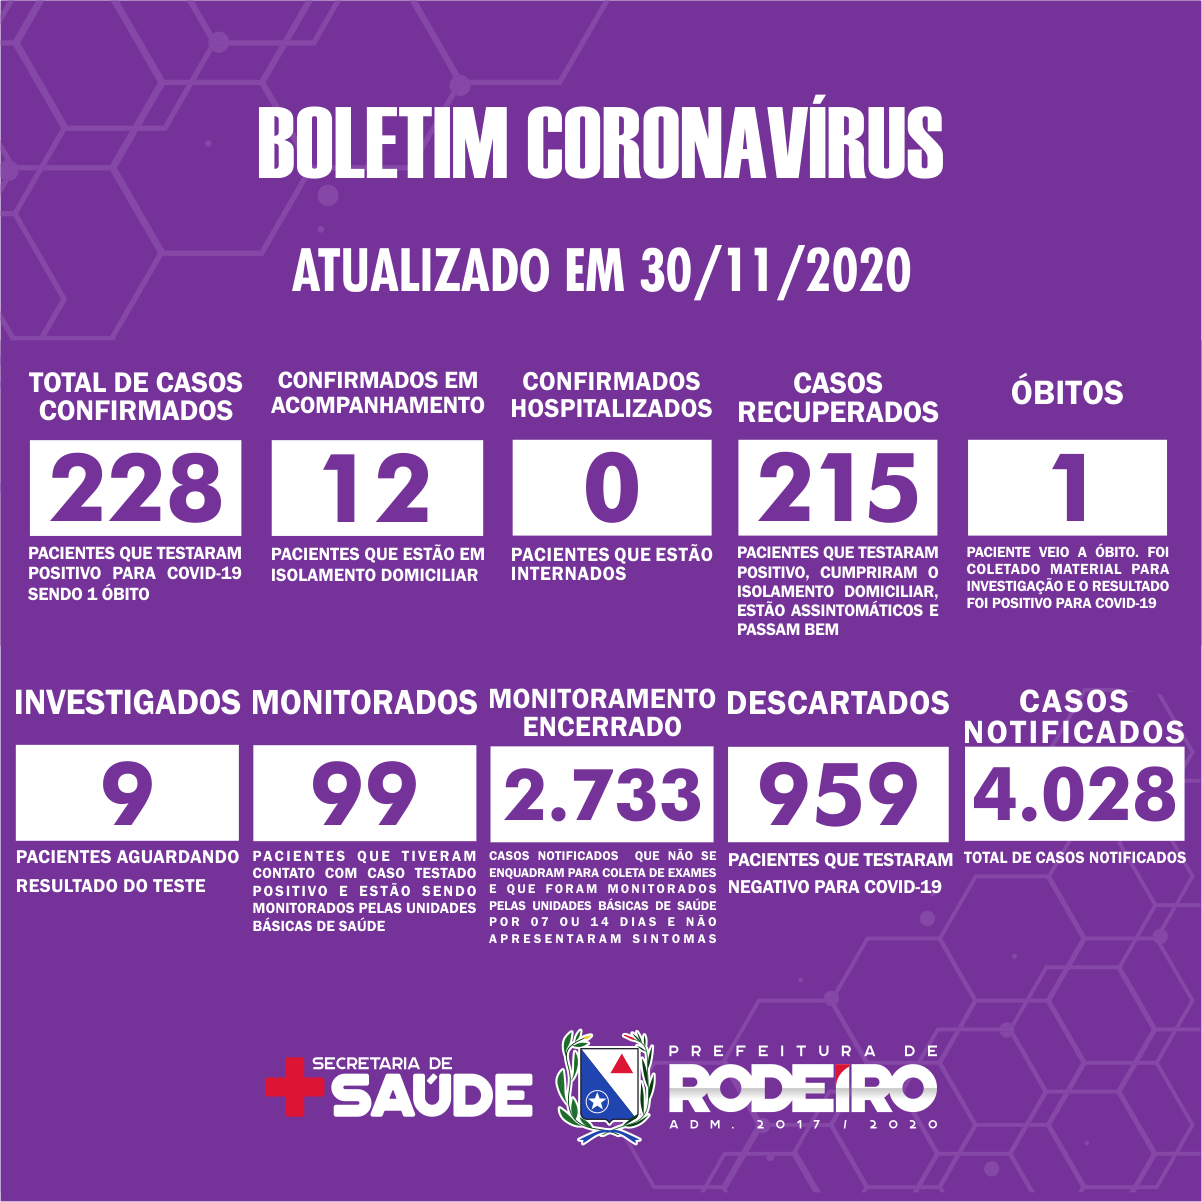 Boletim Epidemiológico do Município de Rodeiro sobre coronavírus, atualizado em 30/11/2020